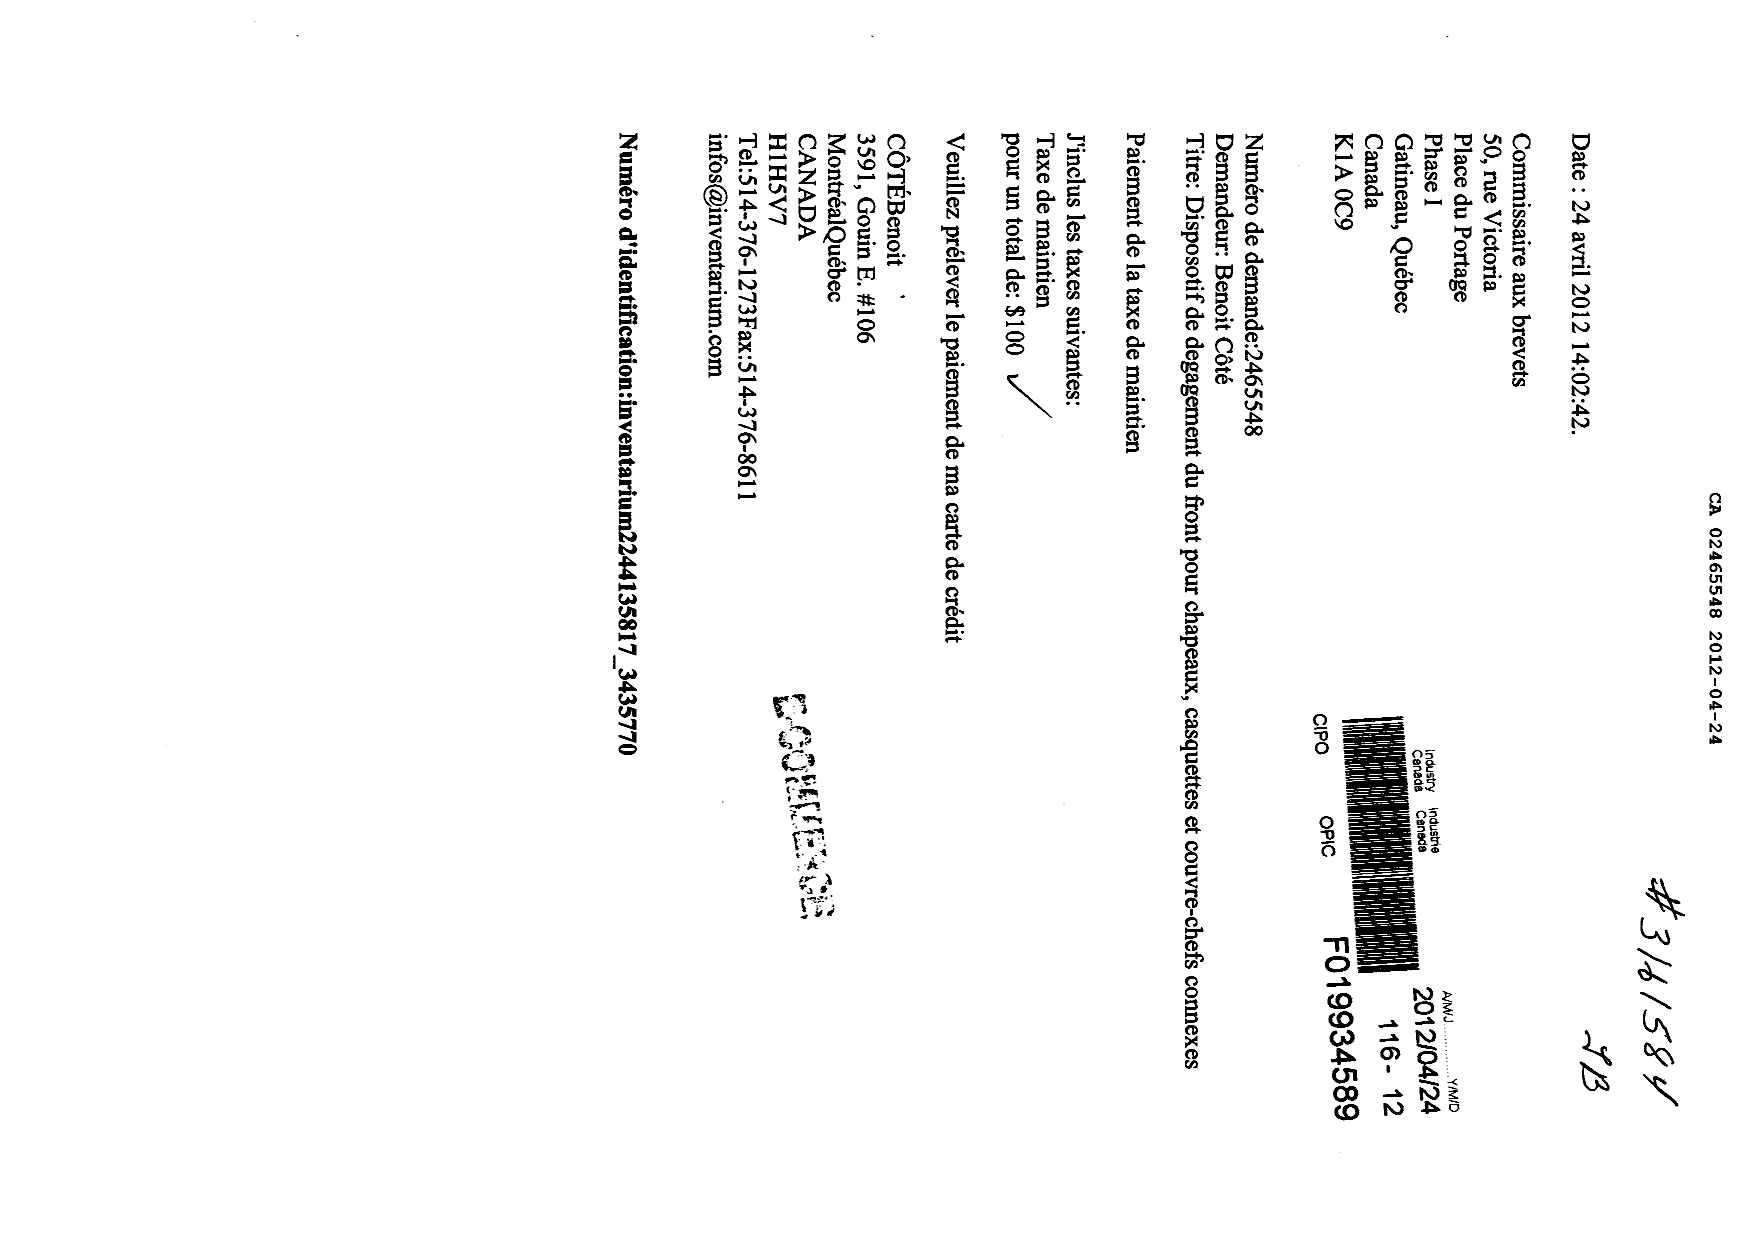 Document de brevet canadien 2465548. Taxes 20111224. Image 1 de 1